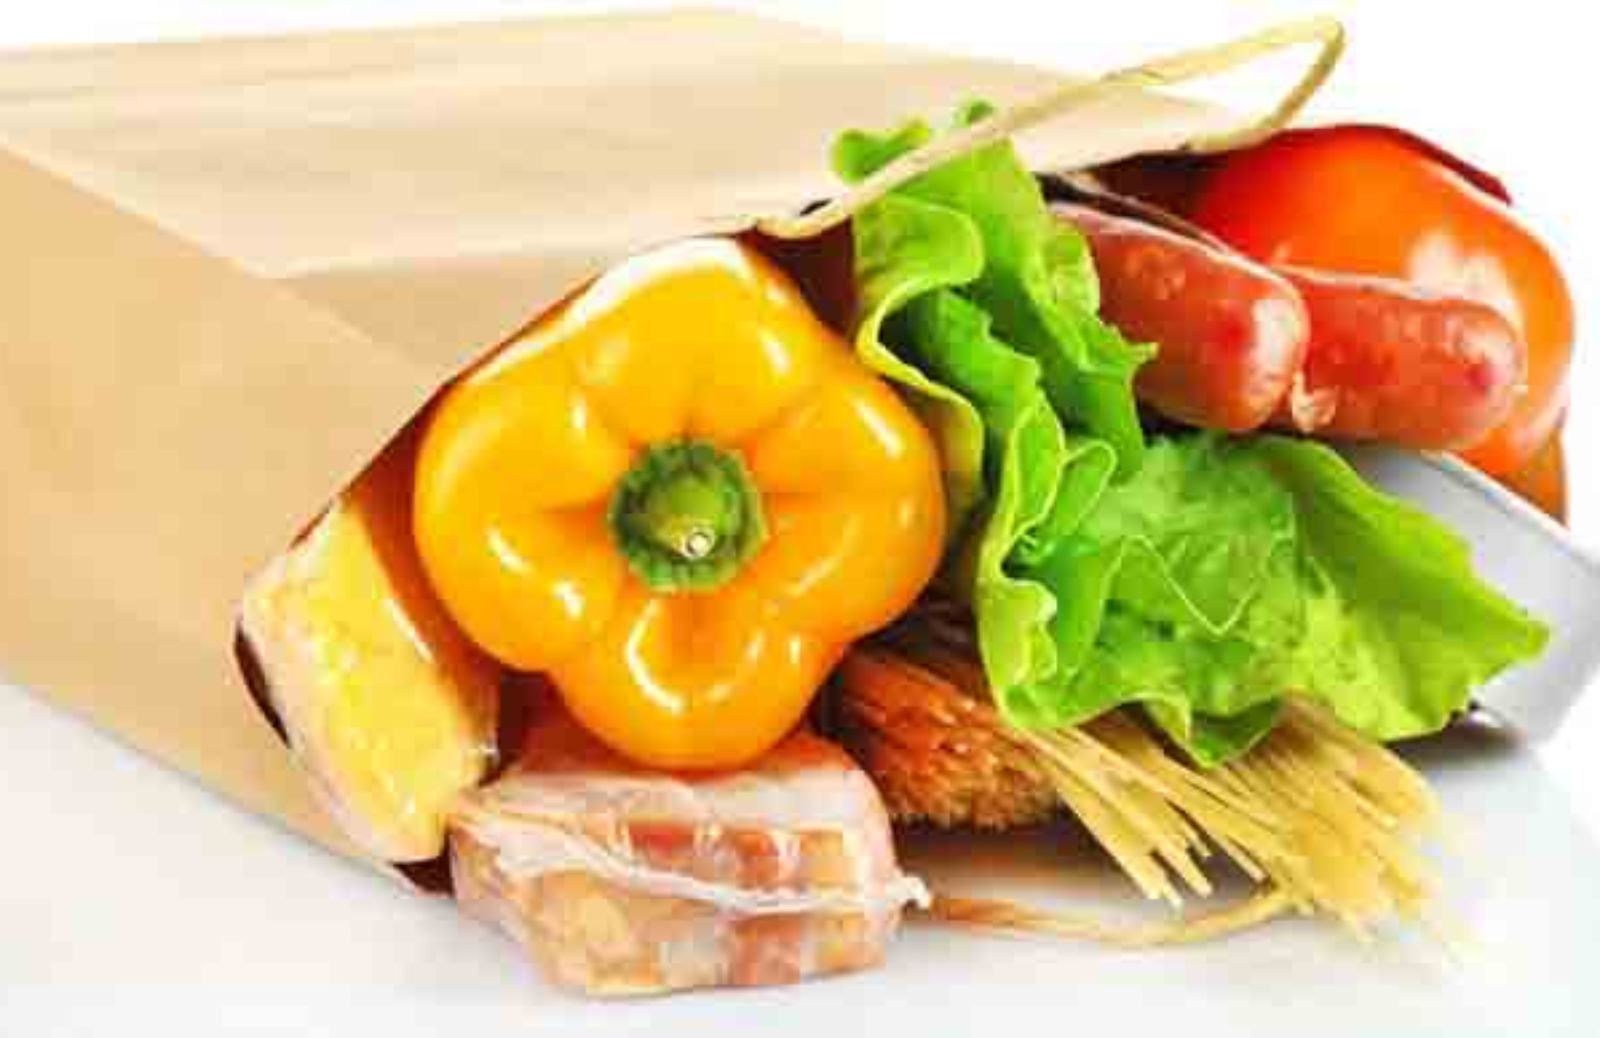 Le dieci regole per evitare lo spreco alimentare